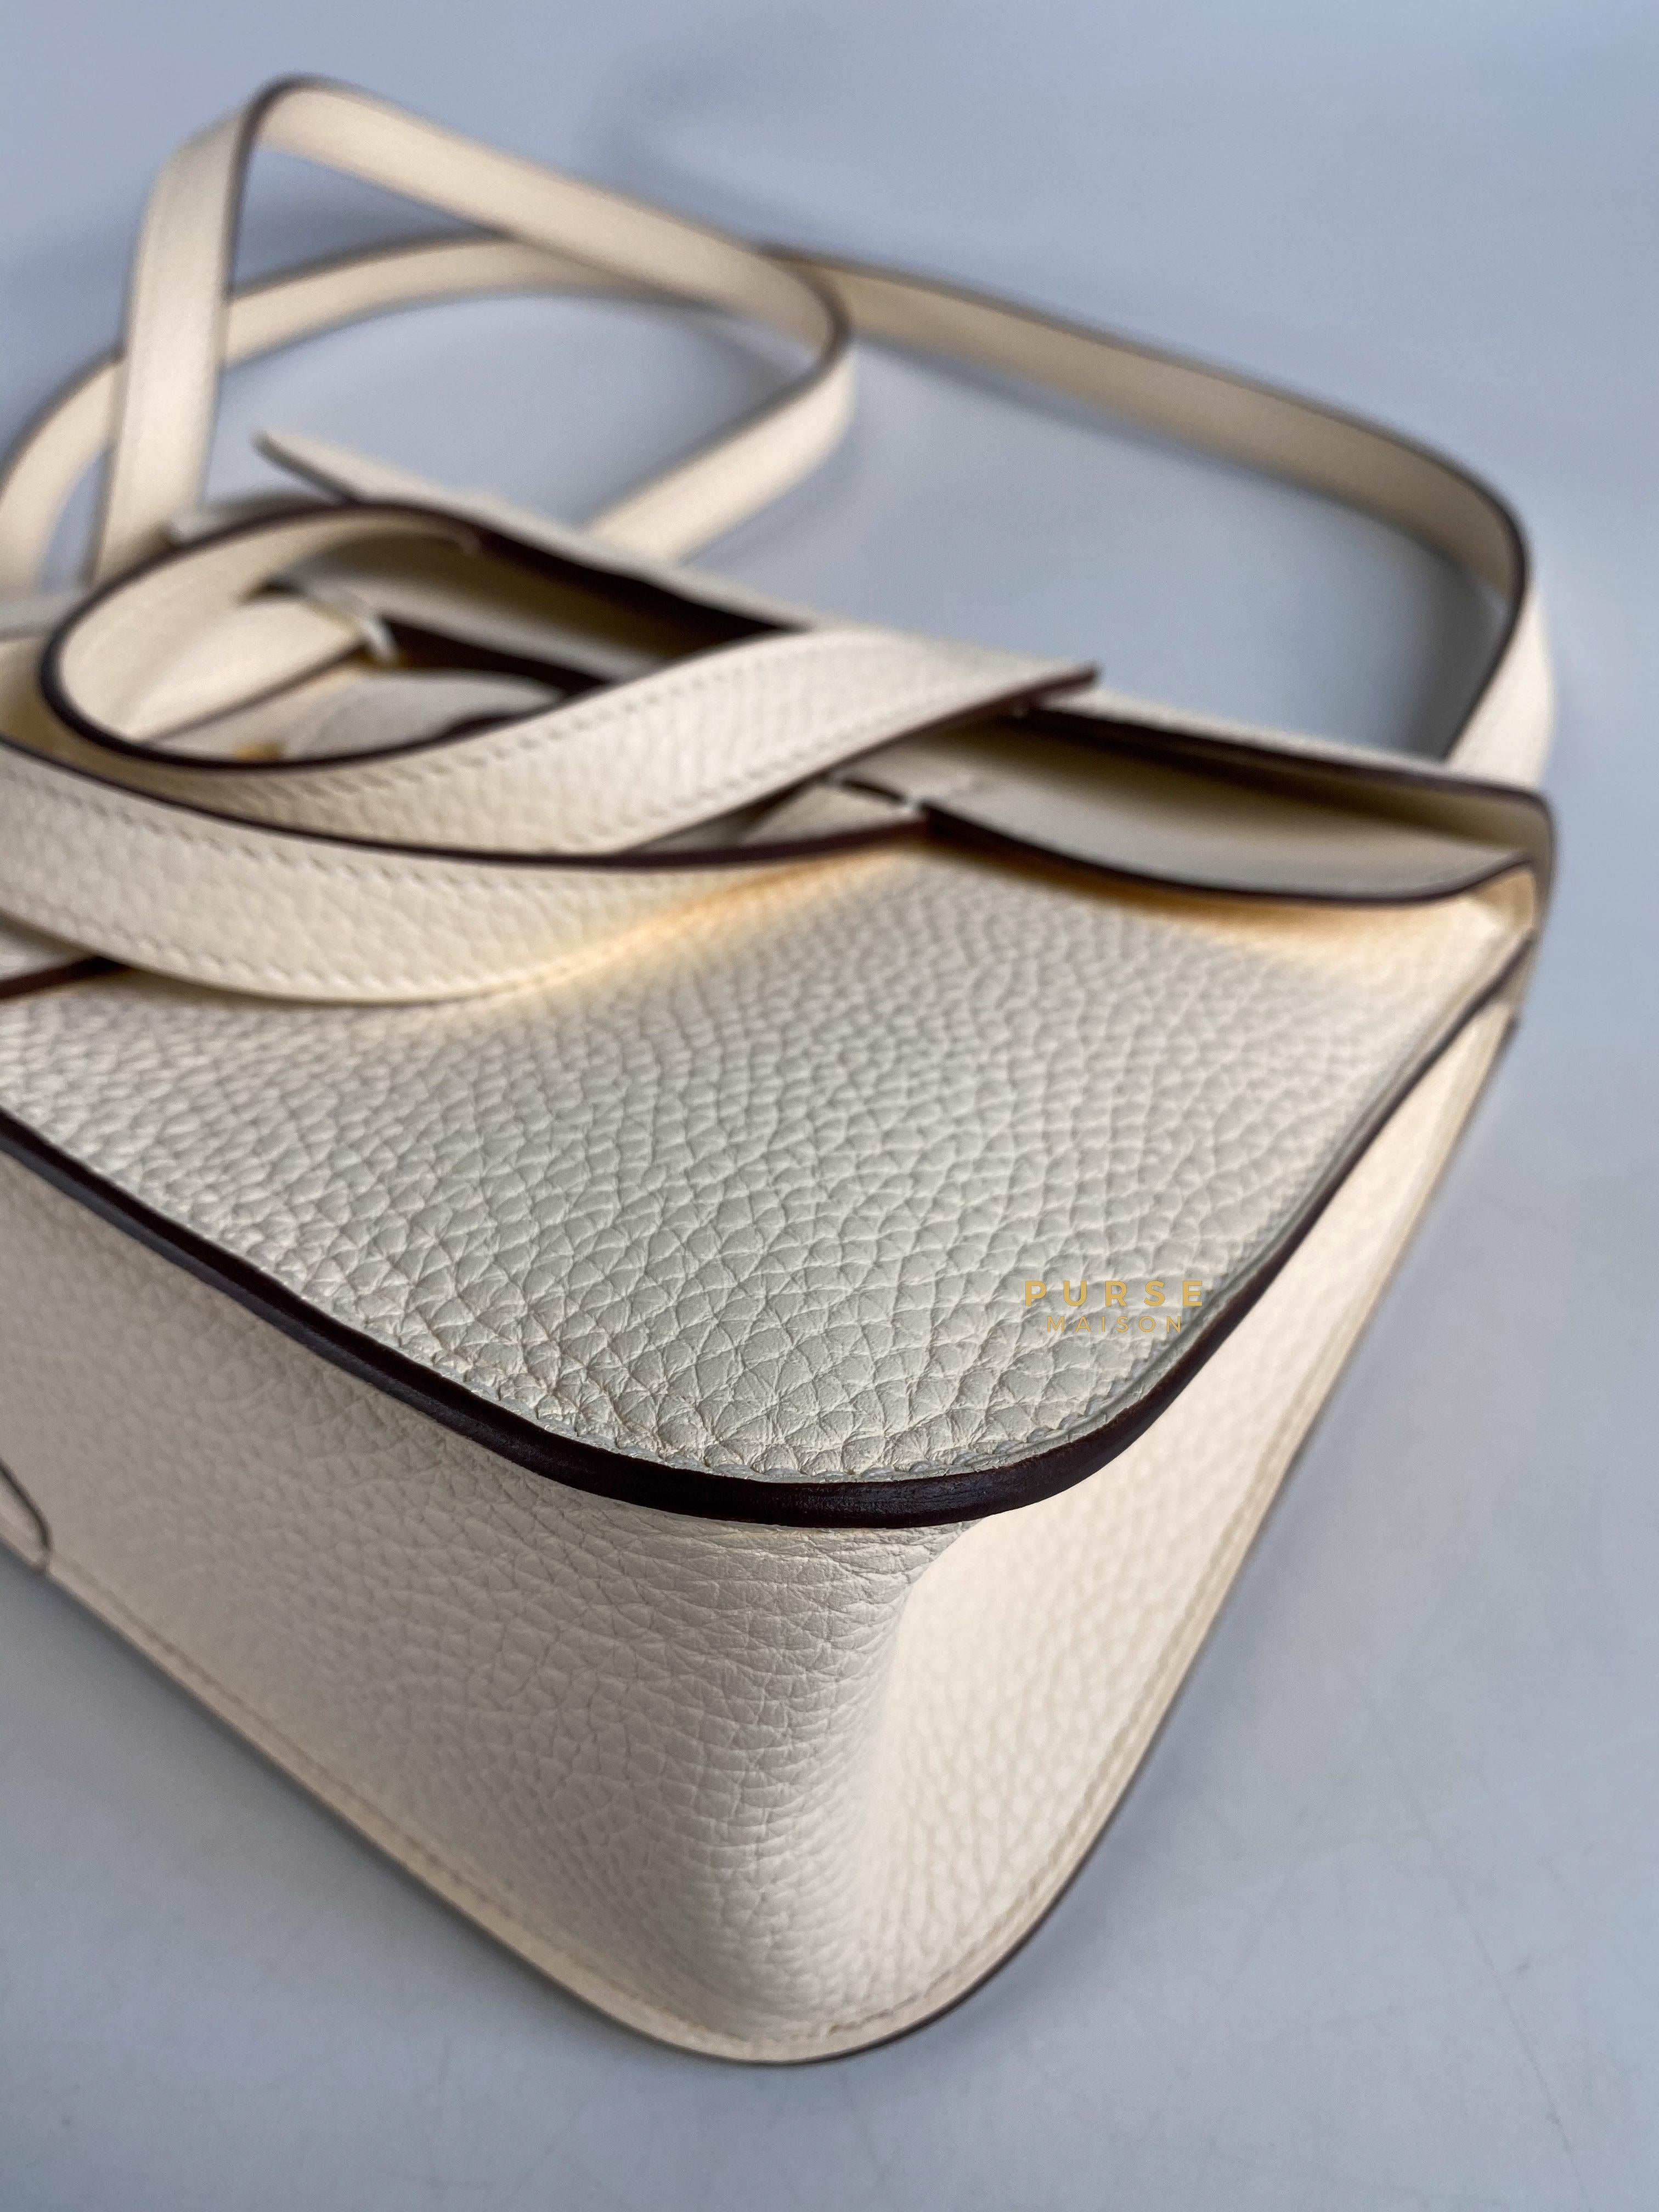 Hermes Sac Halzan 25 Taurillon Clemence Nata Gold Hardware Stamp Z | Purse Maison Luxury Bags Shop